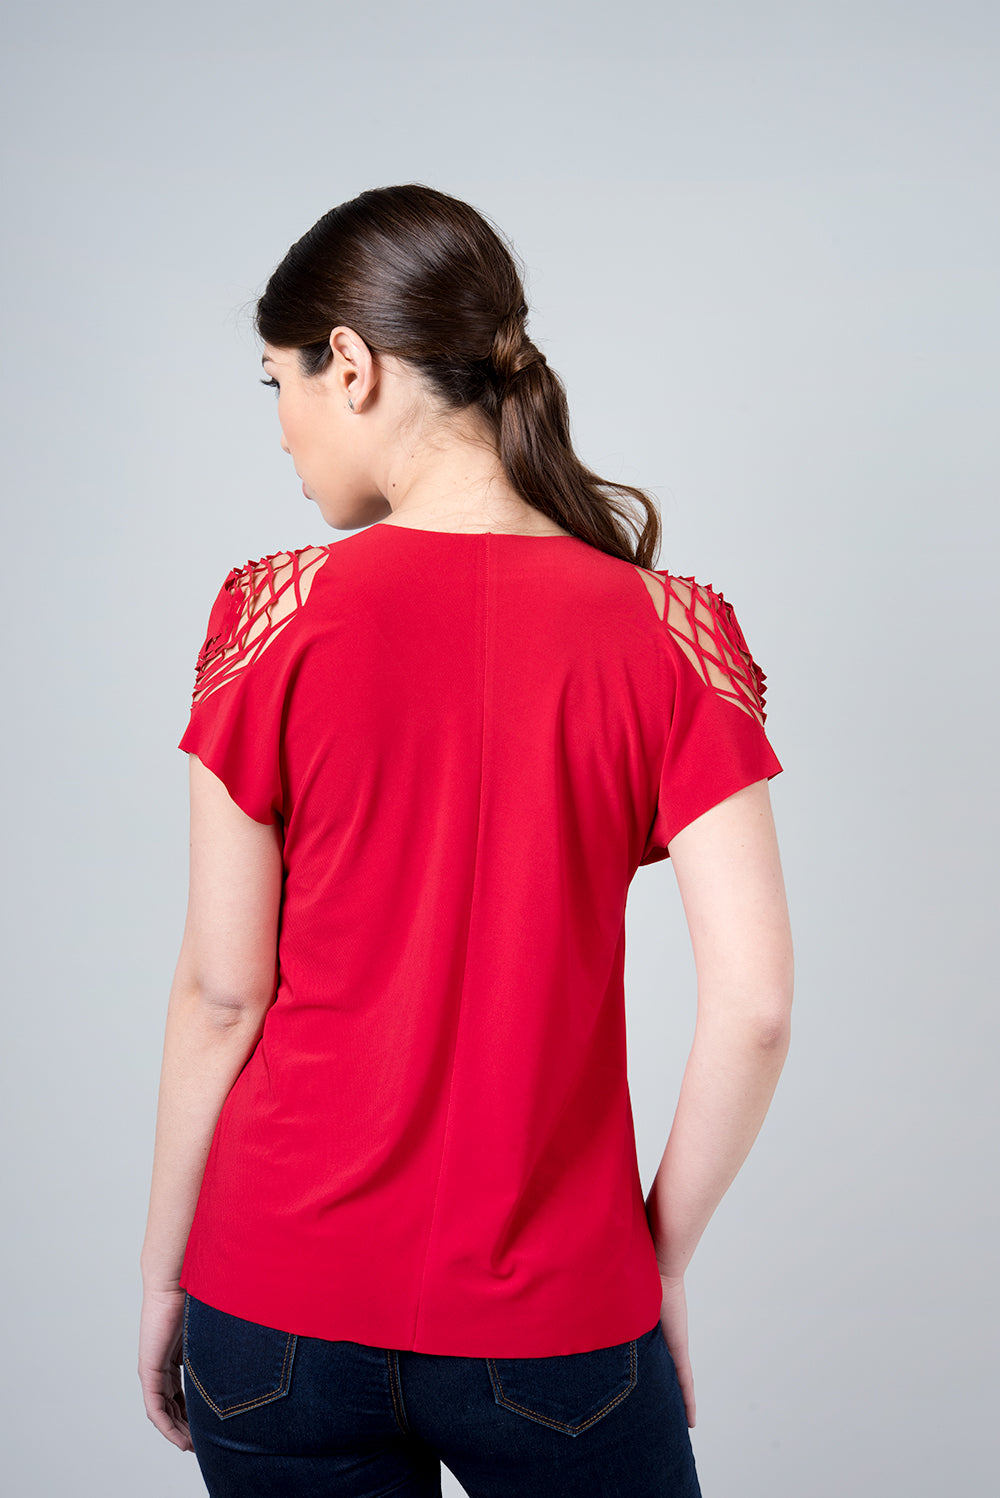 חולצת דלתא אדומה - חולצת משושים בכתף